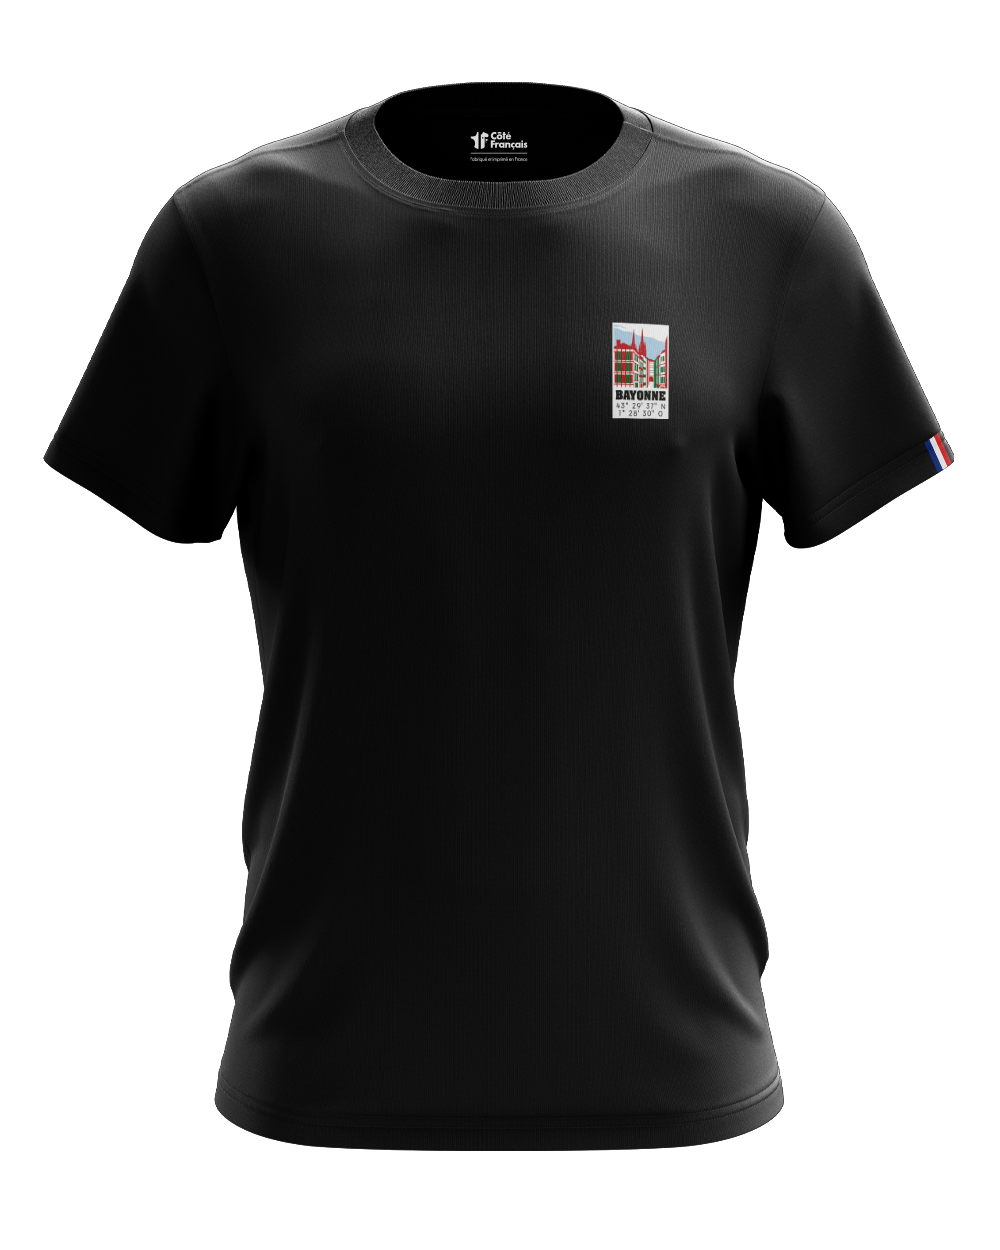 T-shirt "Ville de Bayonne" - noir